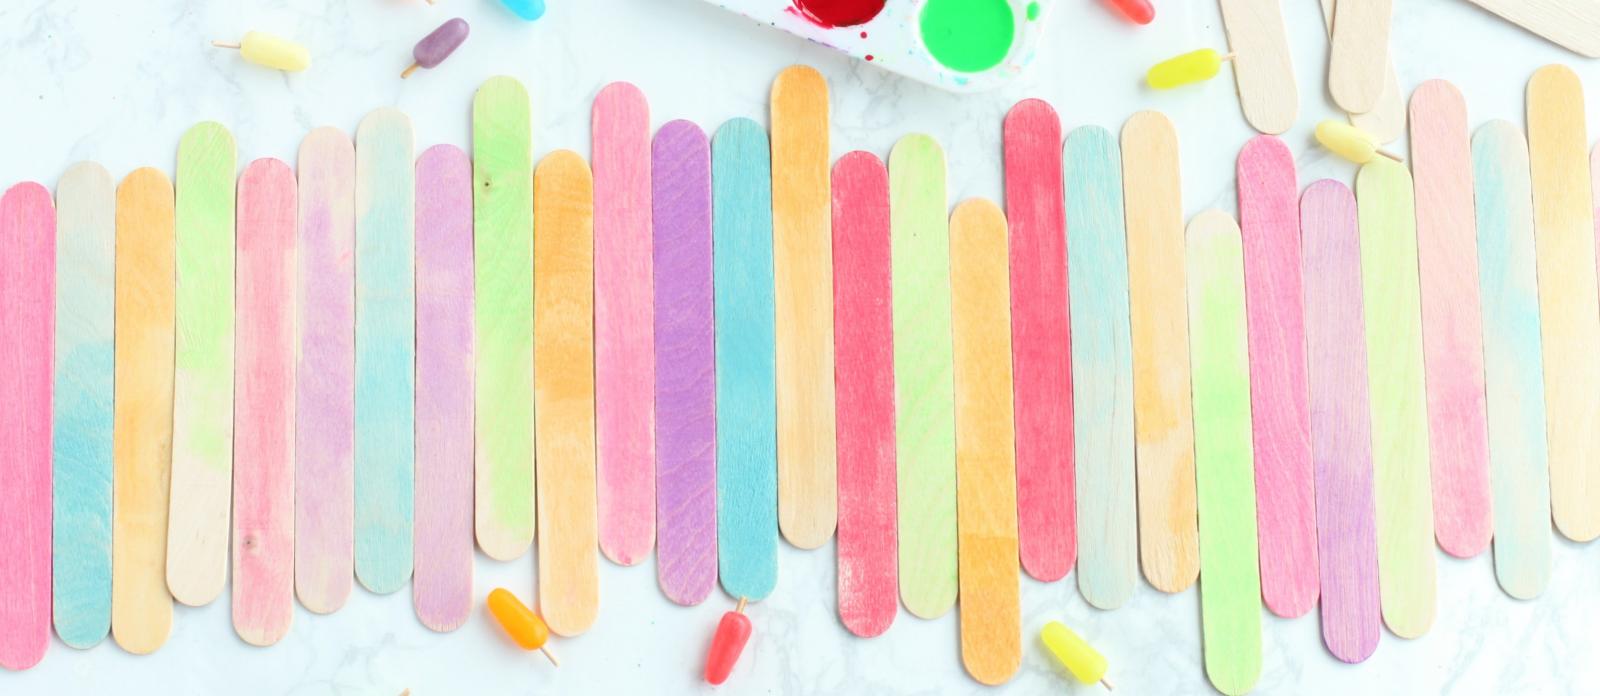 DIY Splatter Paint Popsicle Stick Runner